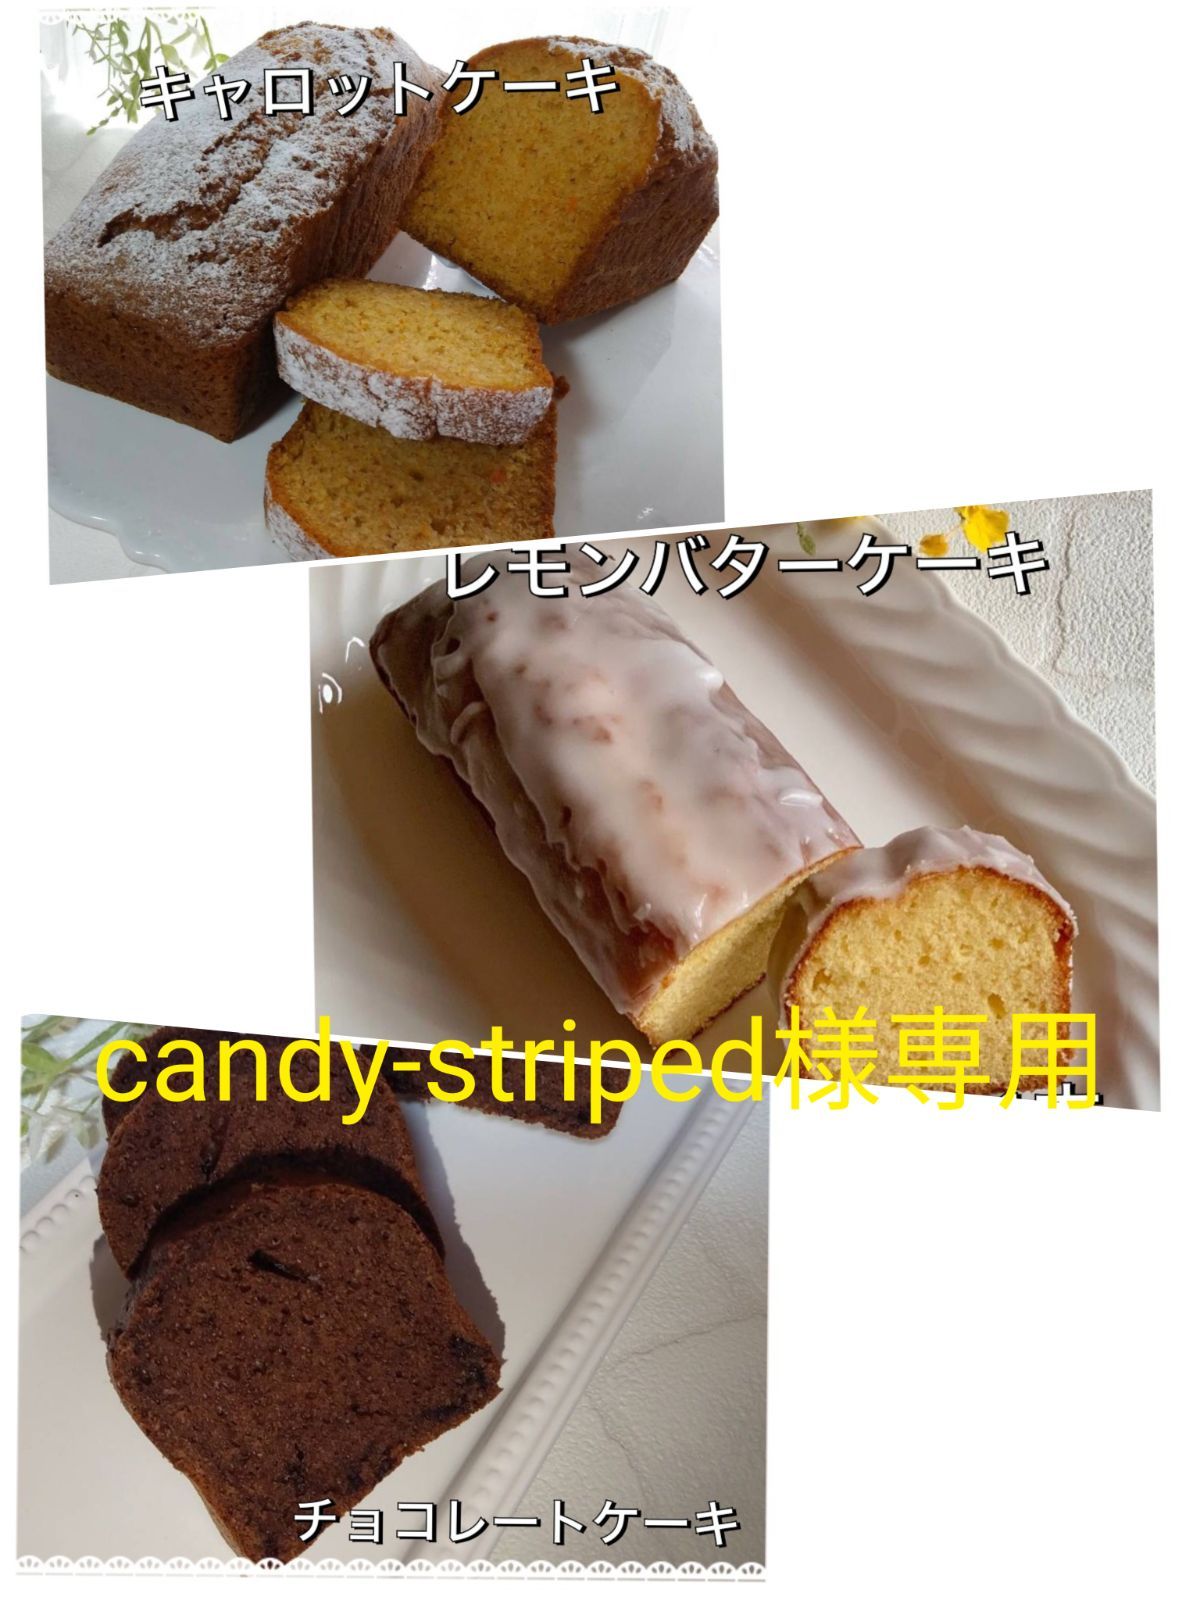 手作りパウンドケーキ、candy-striped様専用 - dulce graciaスイーツ